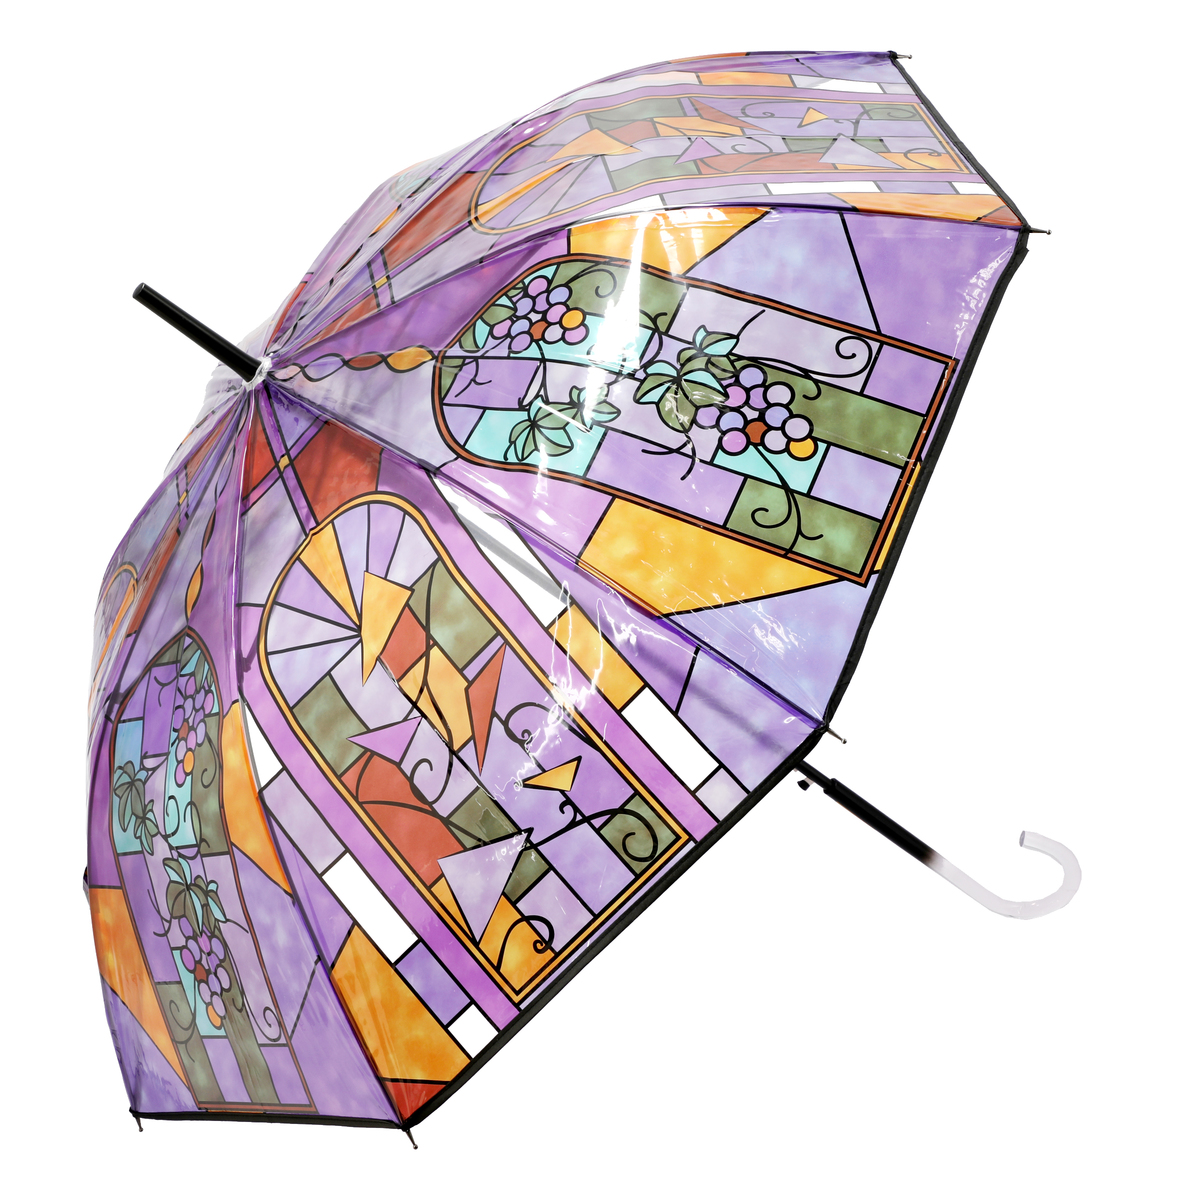  ルナジュメール ステンドグラス柄 ビニール雨傘2色セット  ぶどう/バラ